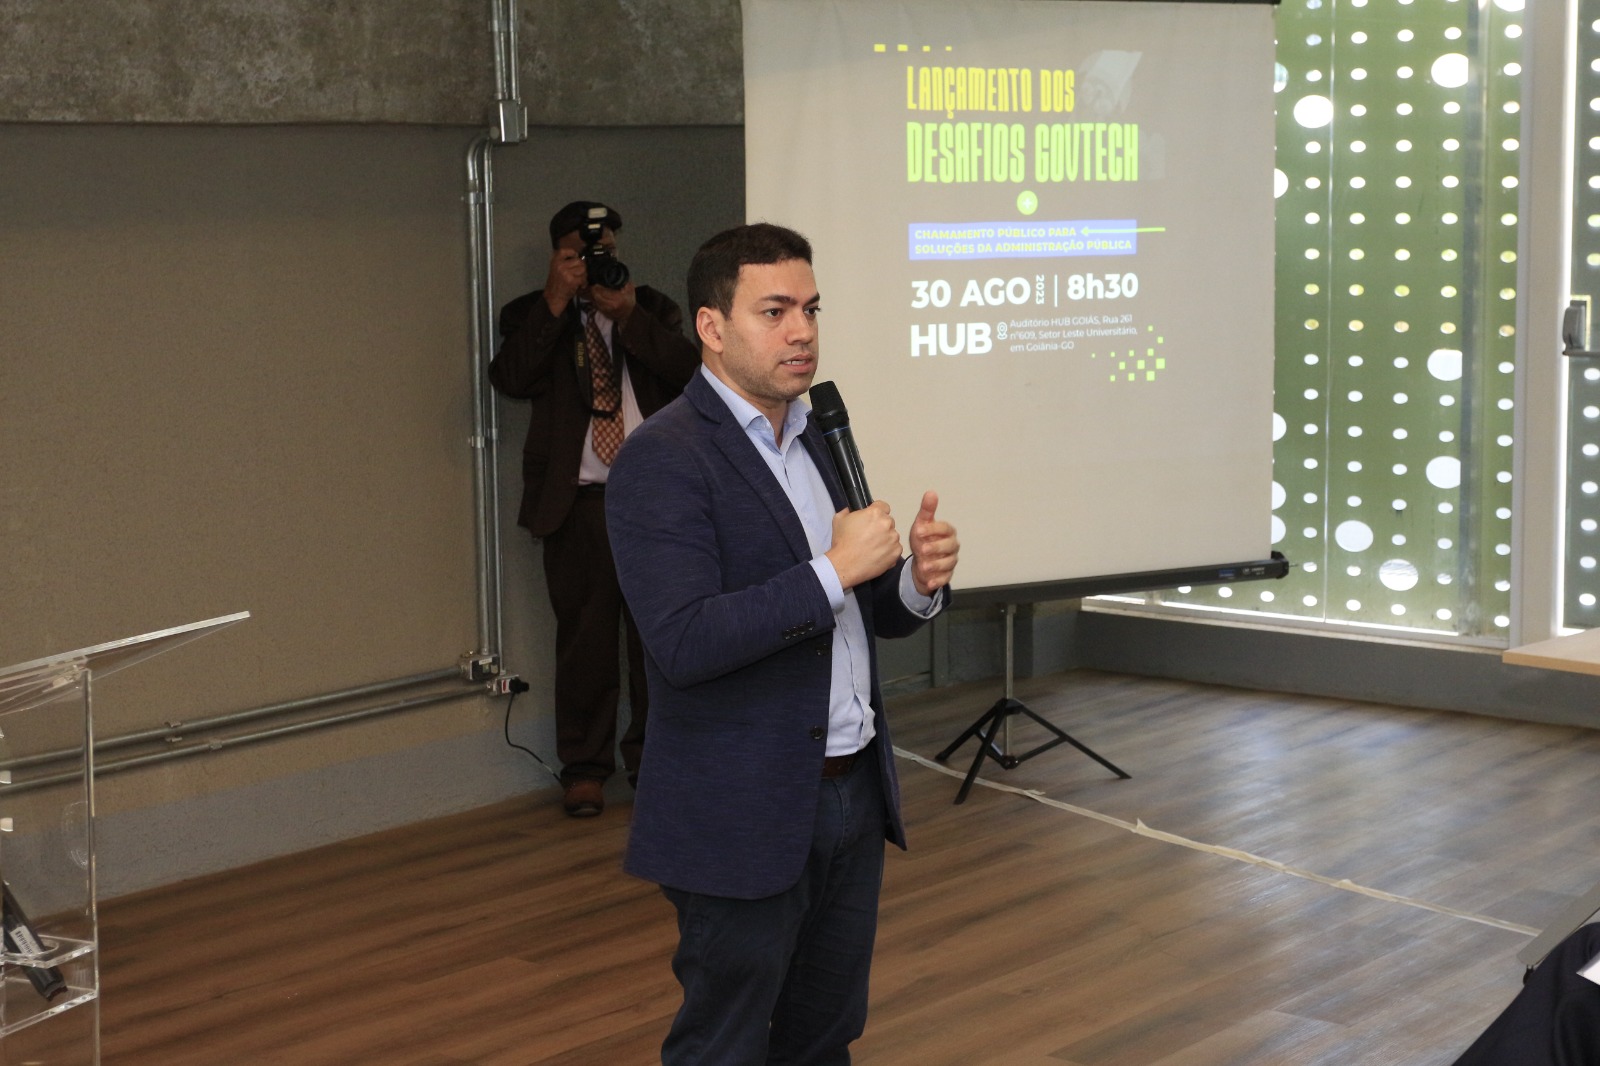 Fotos Edinan Ferreira - Governo de Goiás lança Programa GovTech primeira iniciativa de inovação para que startups desenvolvam soluções inovadoras para o setor público